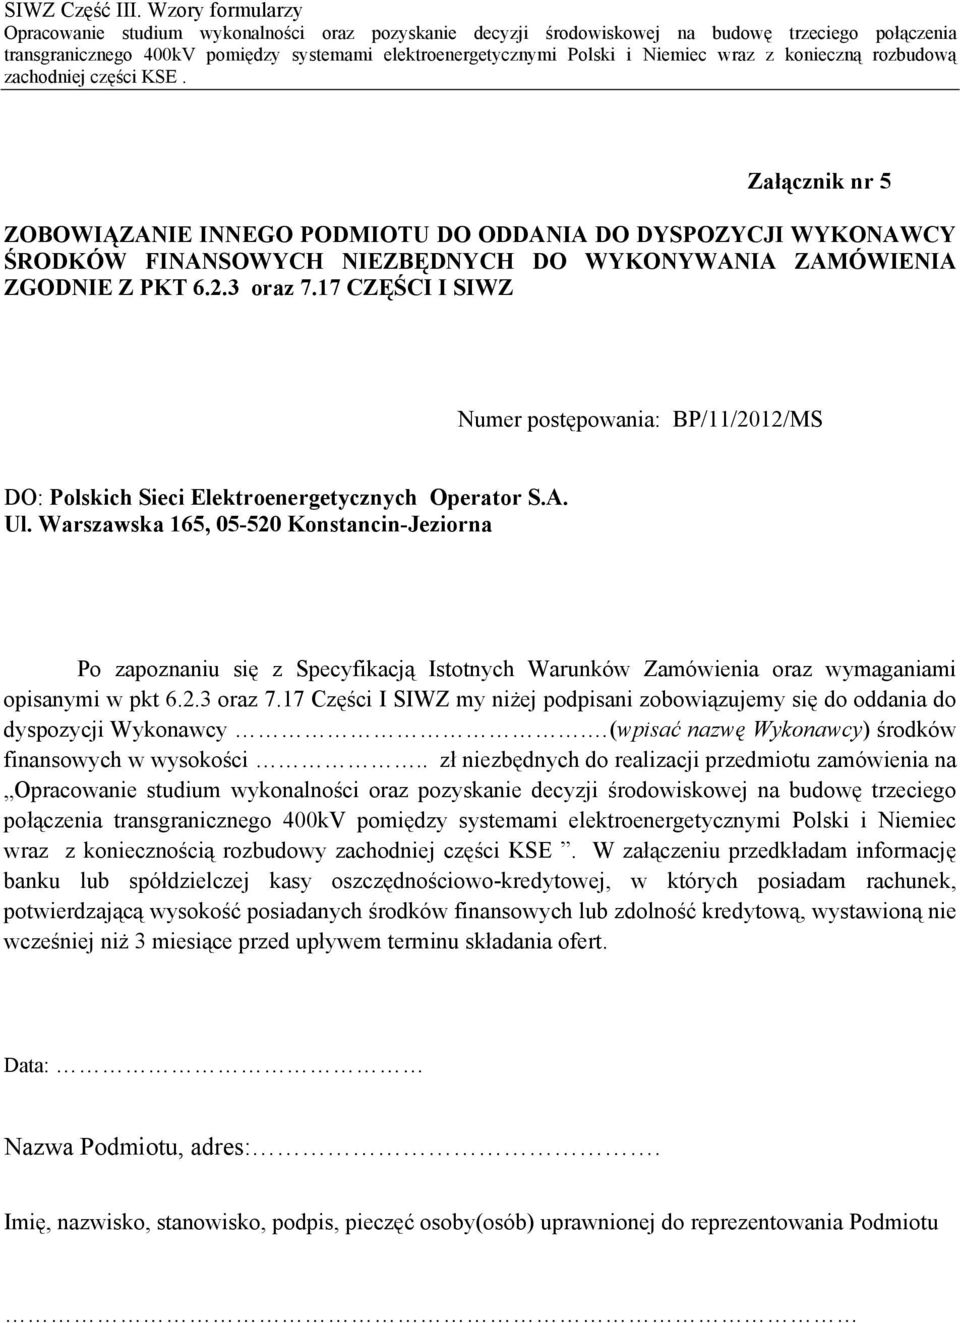 Warszawska 165, 05-520 Konstancin-Jeziorna Po zapoznaniu się z Specyfikacją Istotnych Warunków Zamówienia oraz wymaganiami opisanymi w pkt 6.2.3 oraz 7.